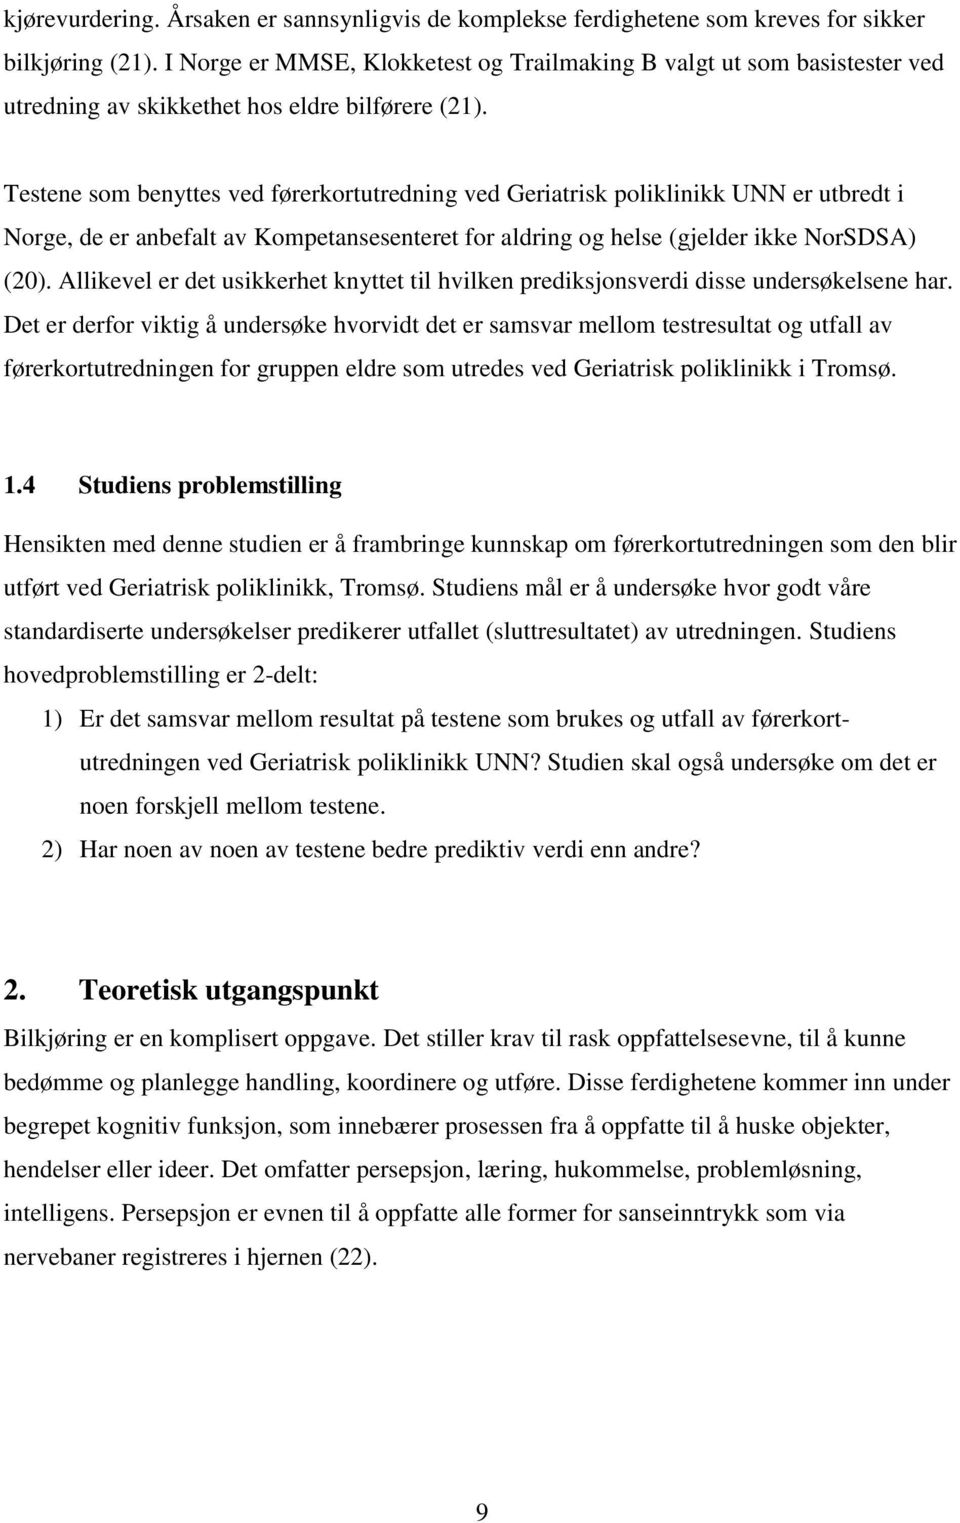 Testene som benyttes ved førerkortutredning ved Geriatrisk poliklinikk UNN er utbredt i Norge, de er anbefalt av Kompetansesenteret for aldring og helse (gjelder ikke NorSDSA) (20).